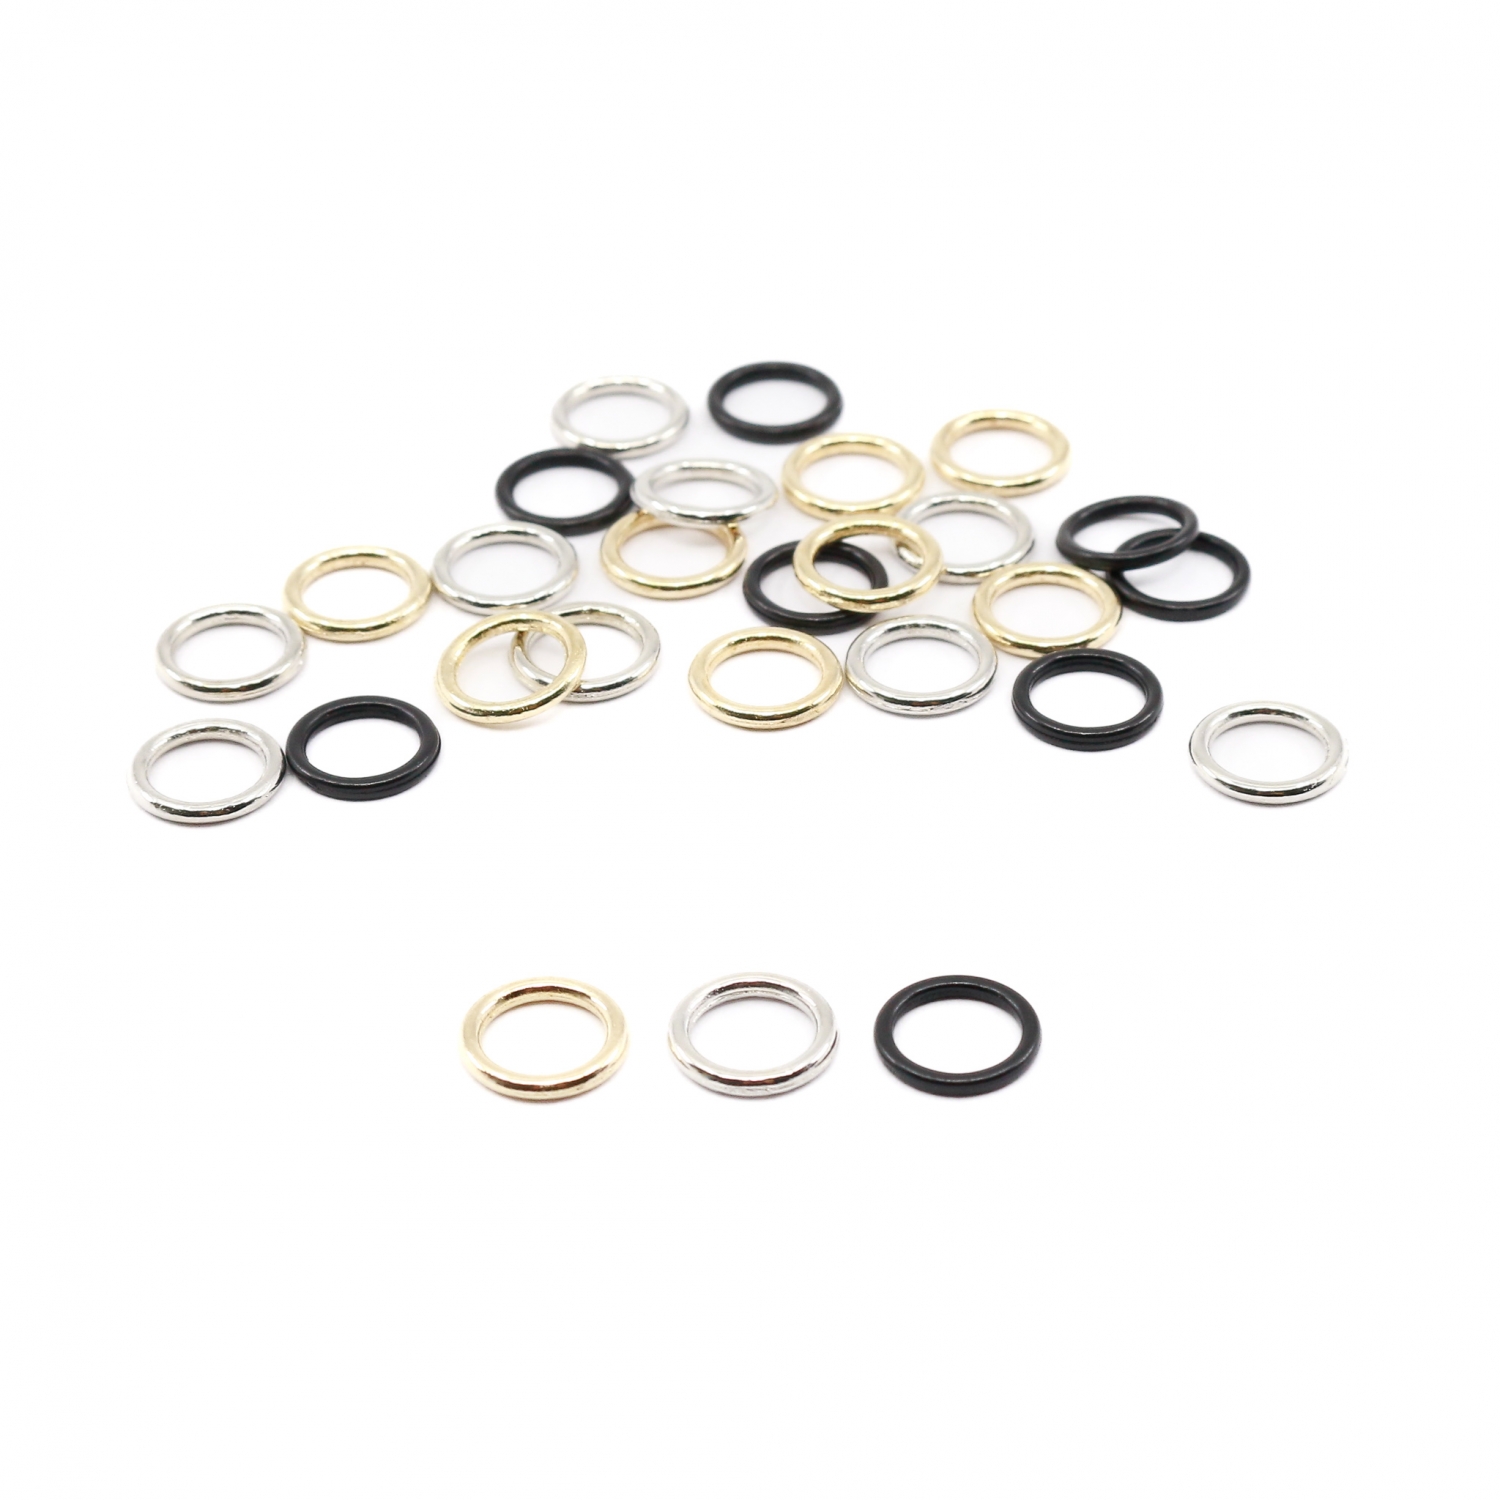 Metal Bra Rings, interior diameter 8 mm (100 pcs/bag)Cod: MH08